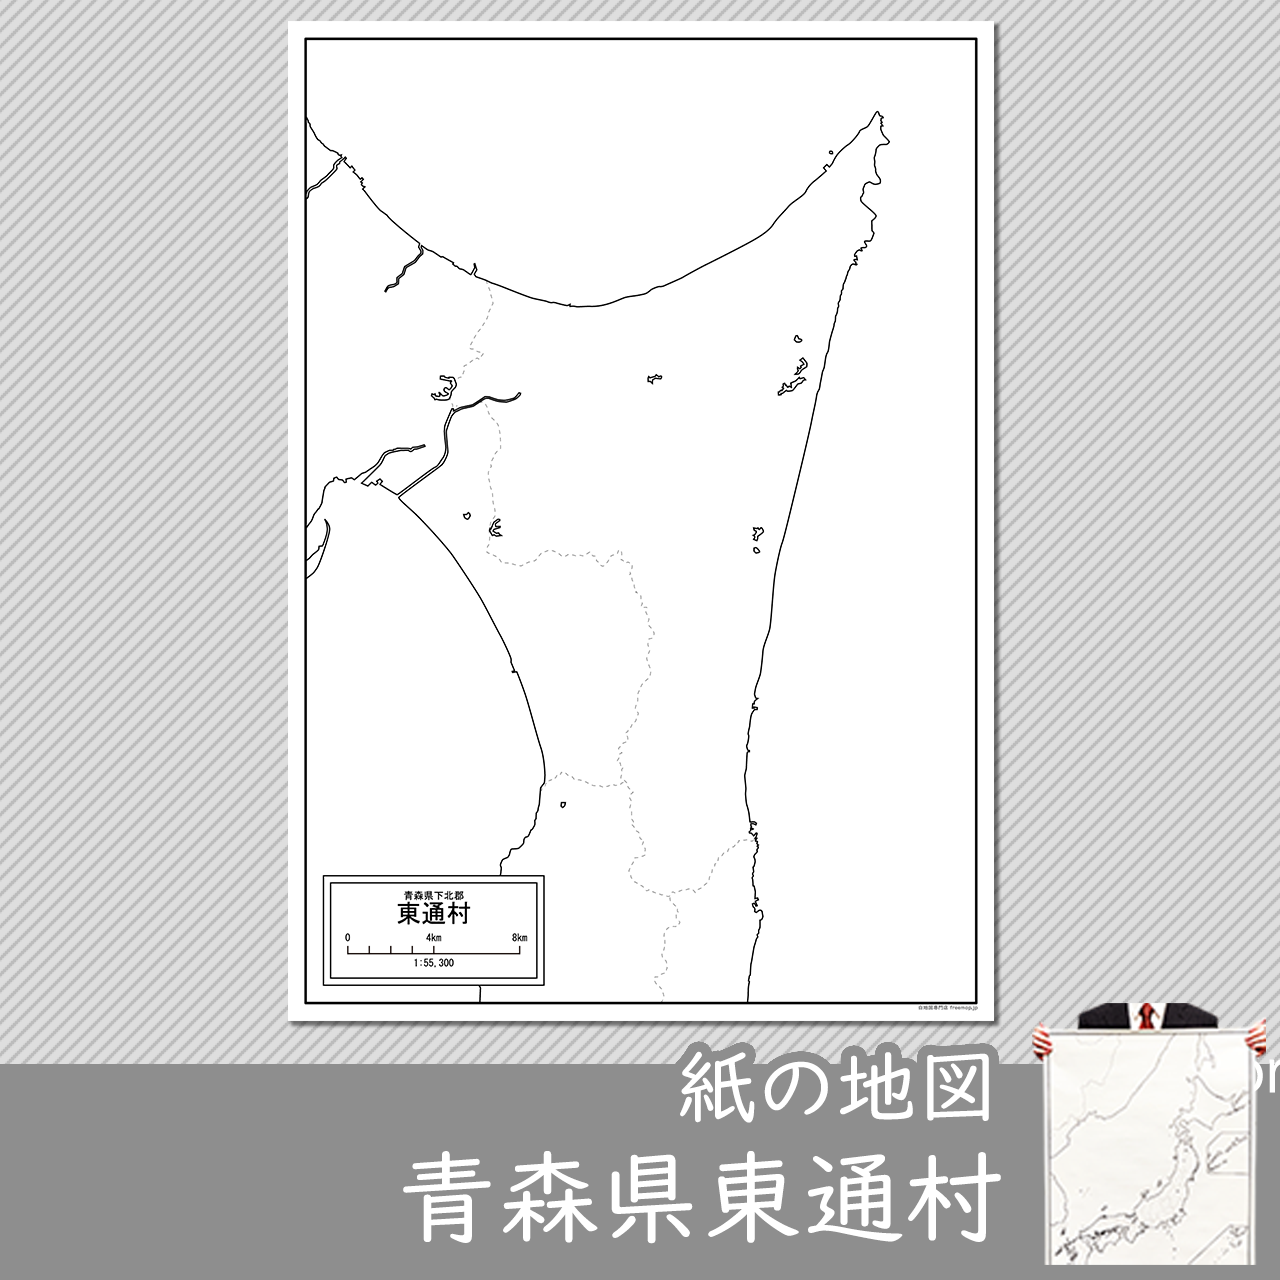 東通村の紙の白地図のサムネイル